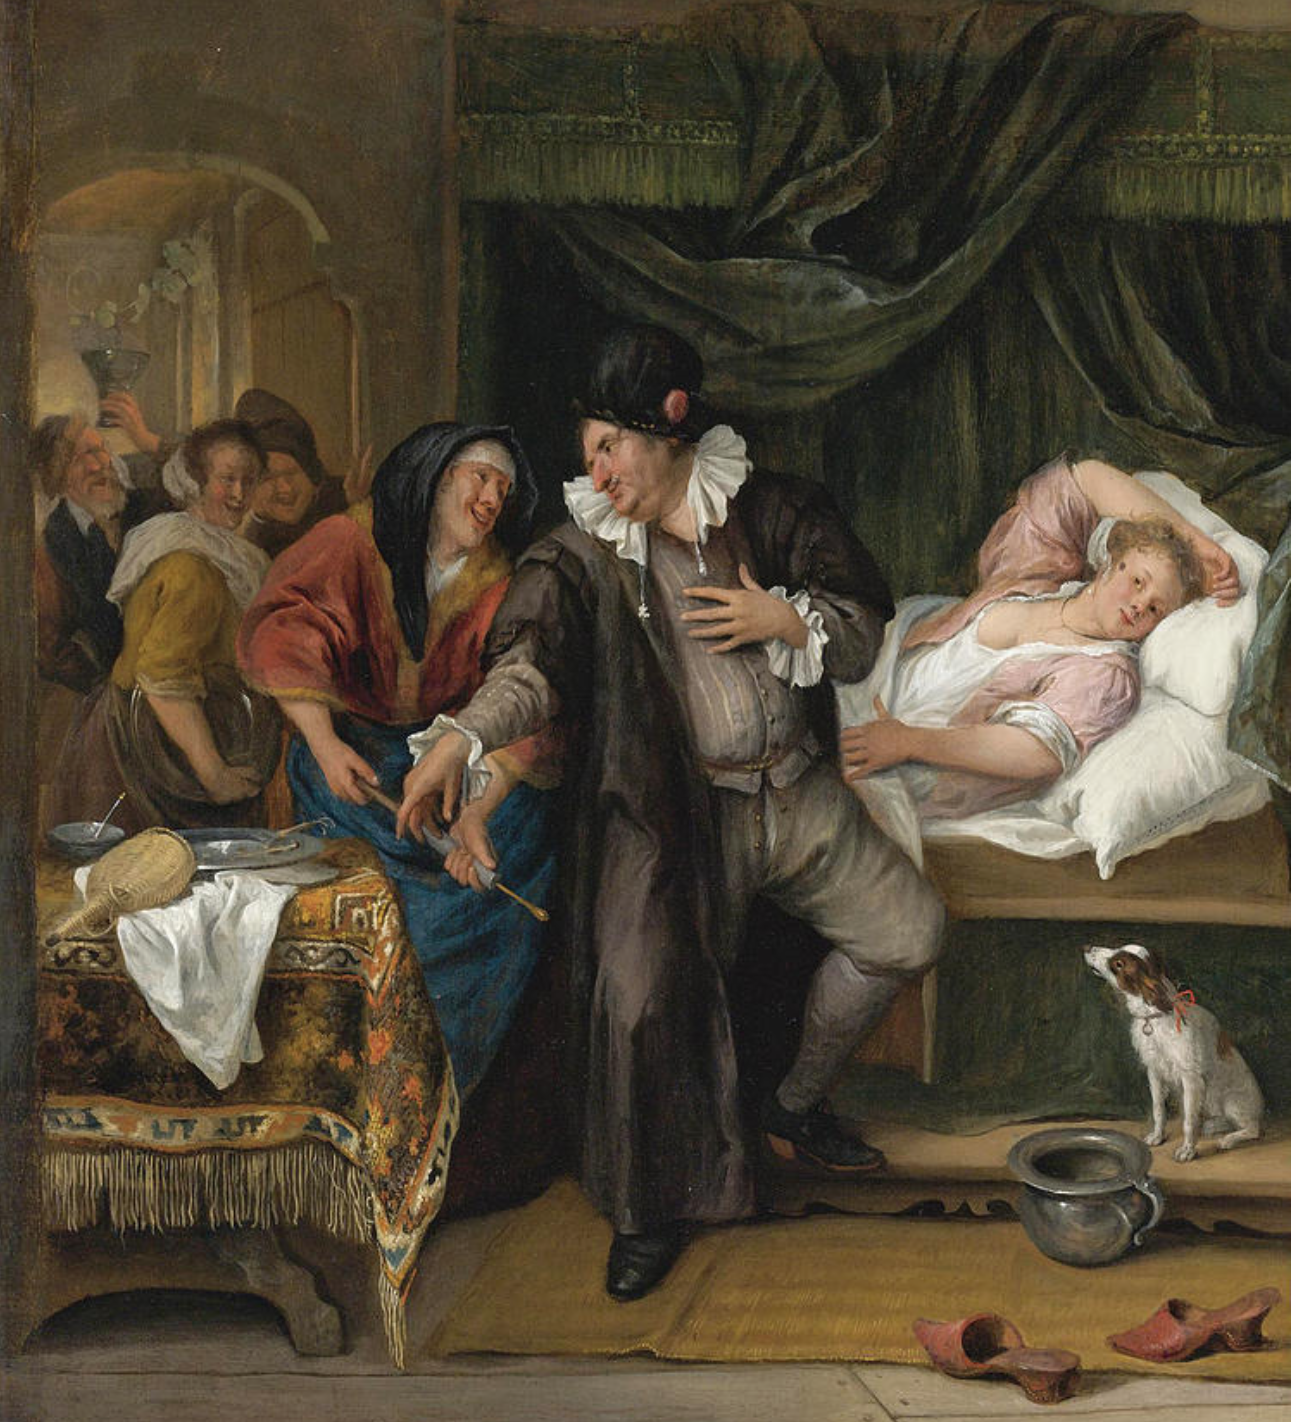 Pintura A visita do médico, de Jan Havicksz Steen, datada de 1665-1670. Há um homem olhando para uma mulher à sua direita e, à sua esquerda, uma mulher sobre uma cama.